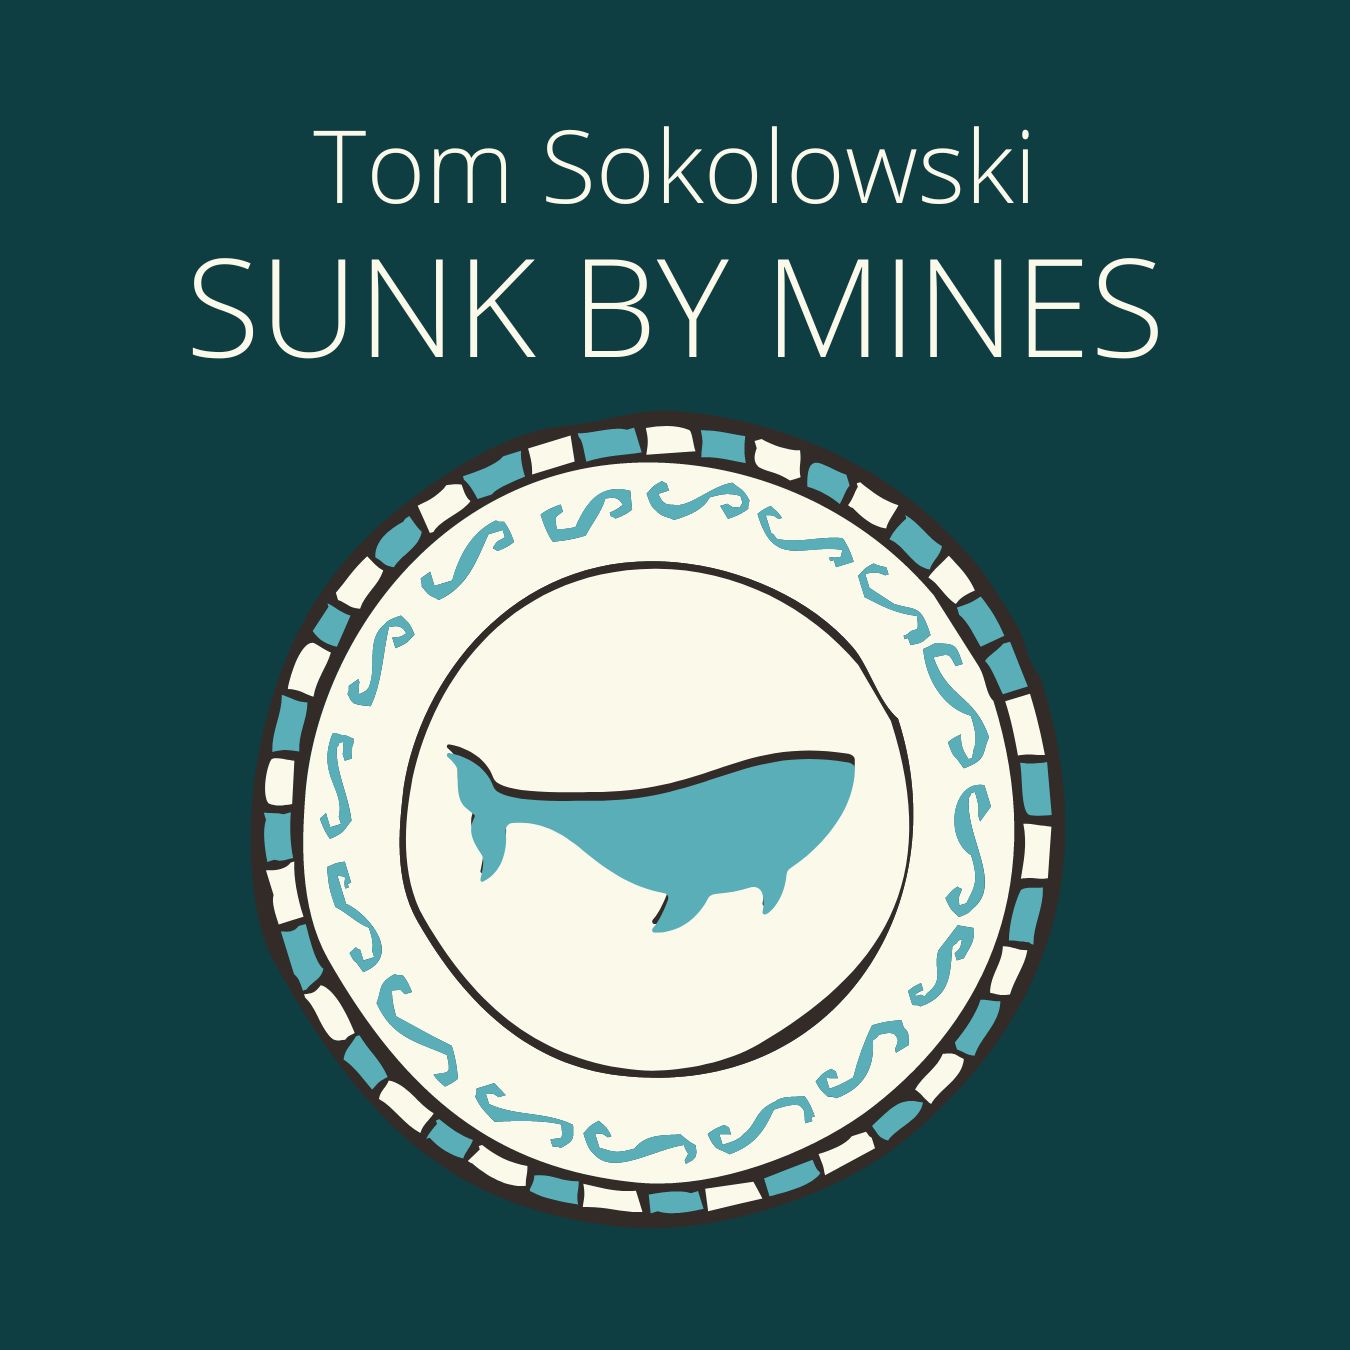 SUNK BY MINES by Tom Sokolowski